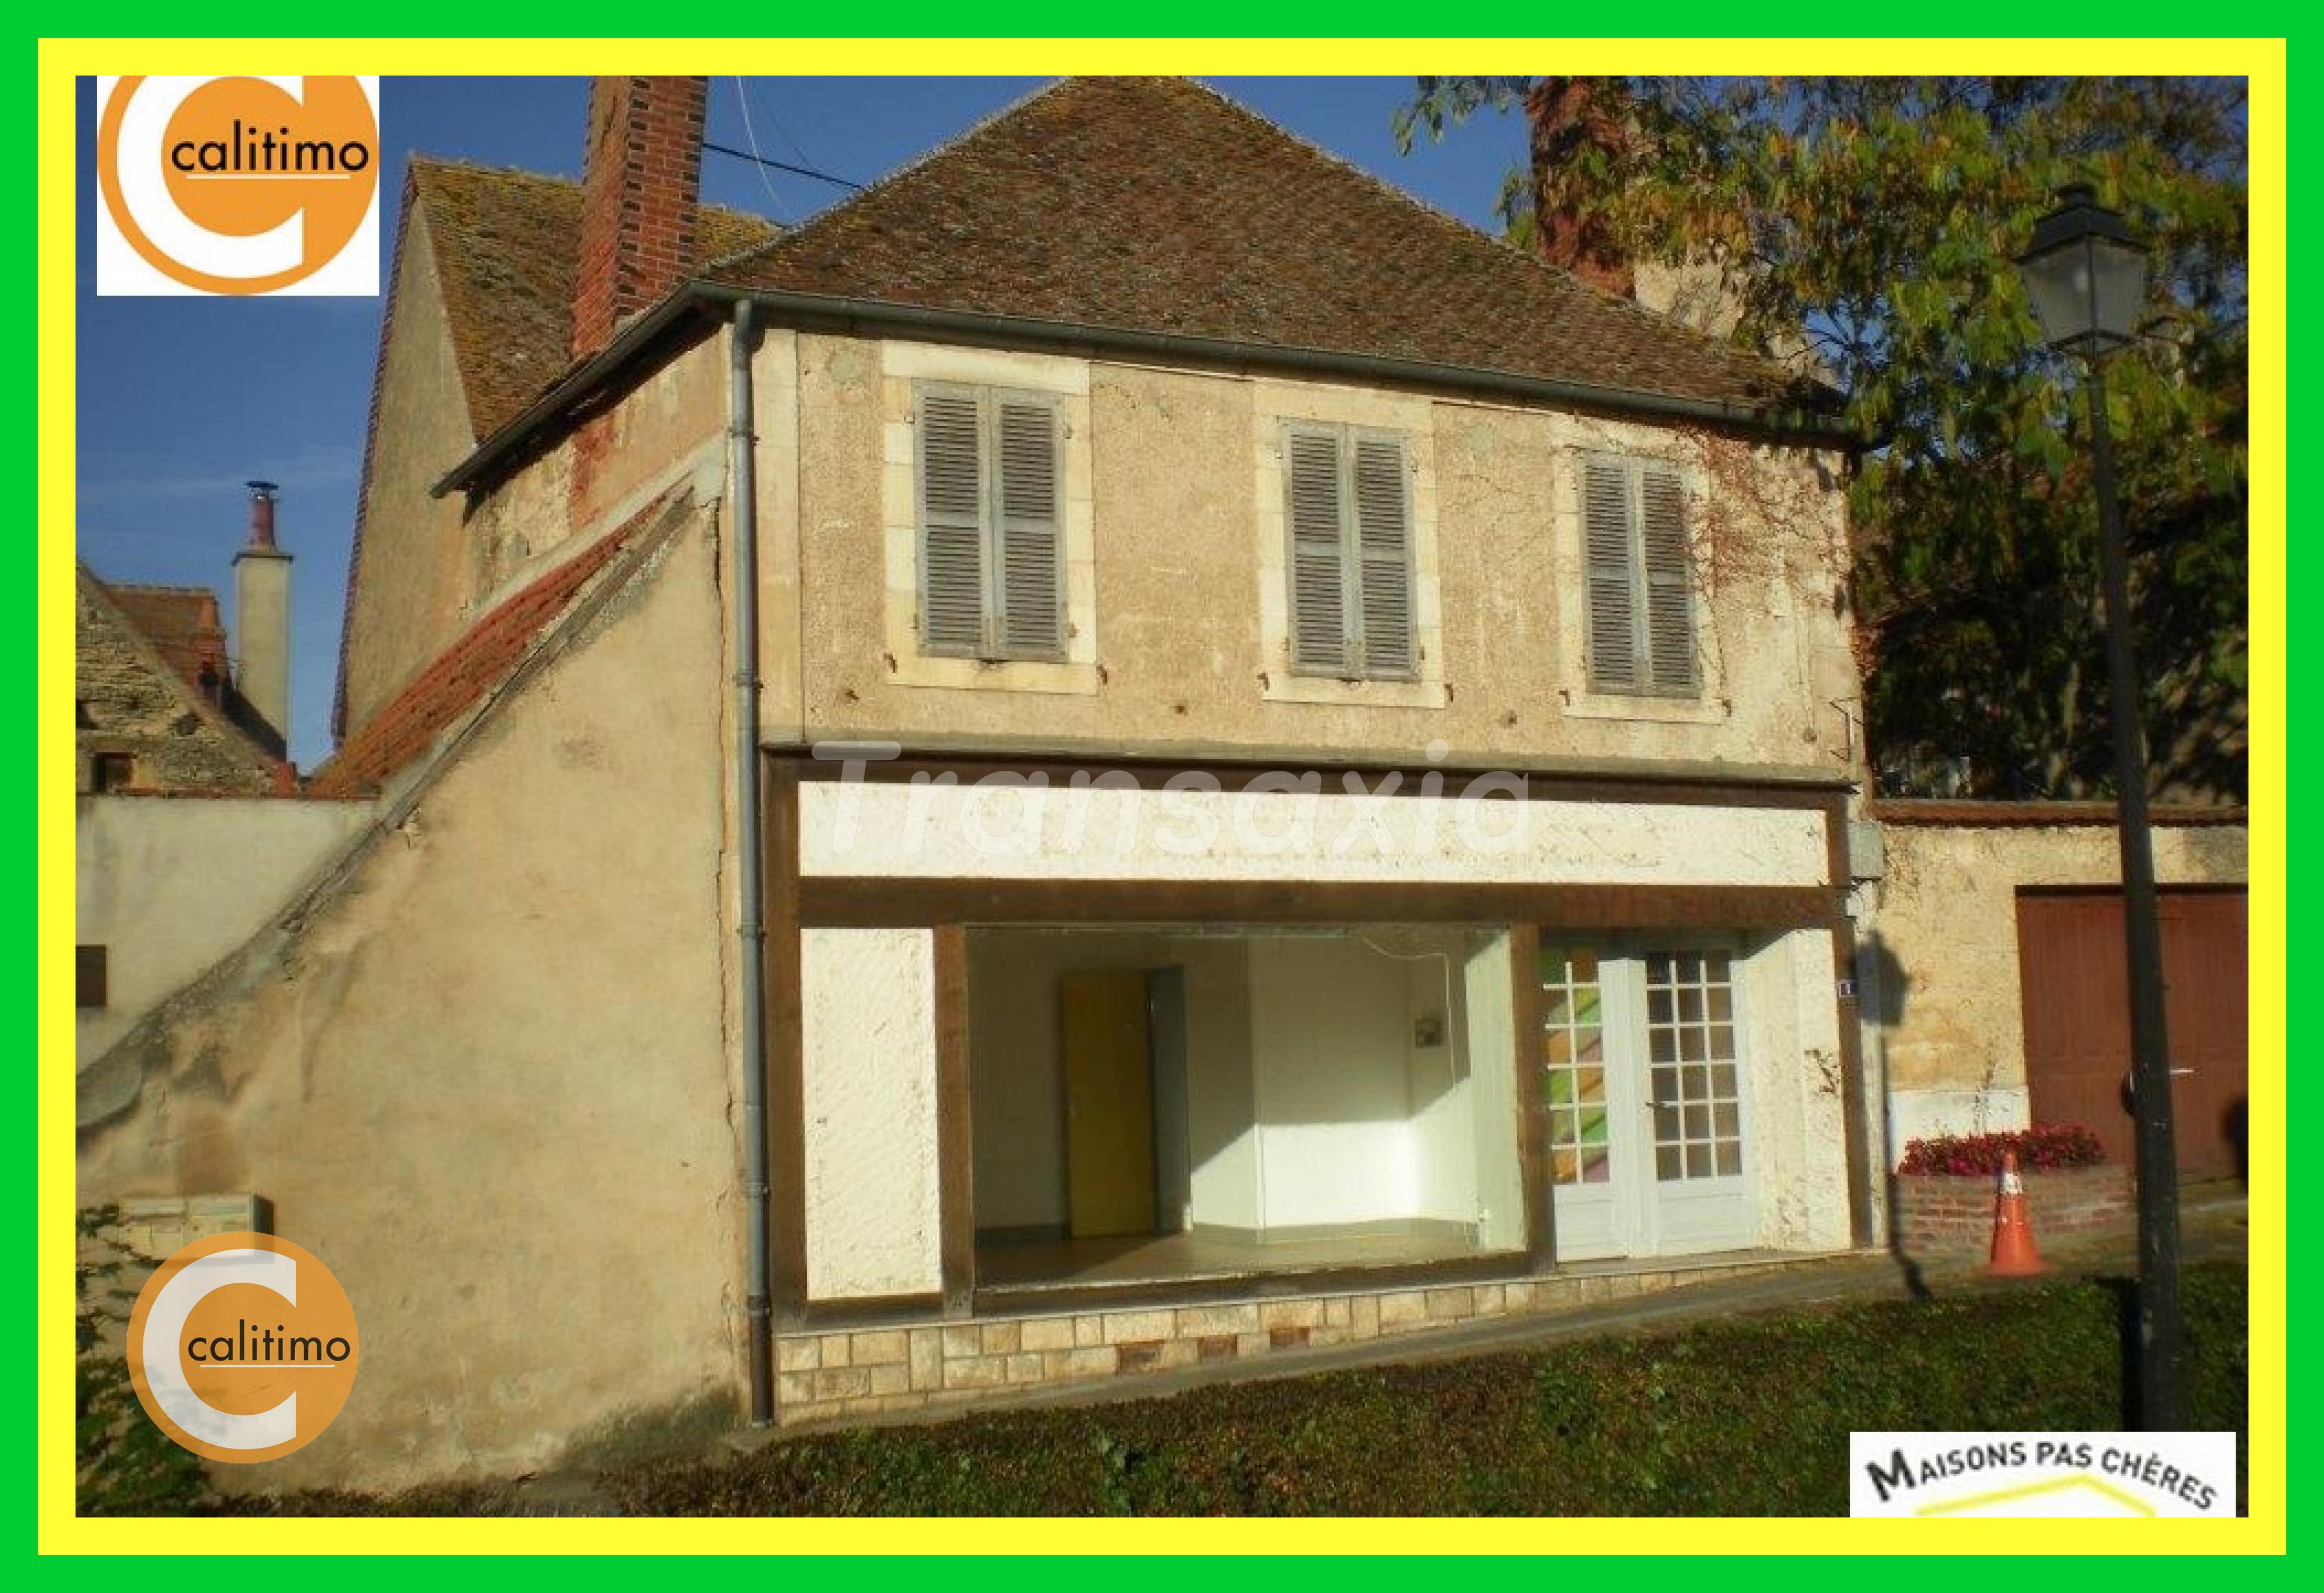 Vente Maison neuve 90 m² à Saint Amand Montrond 45 000 €